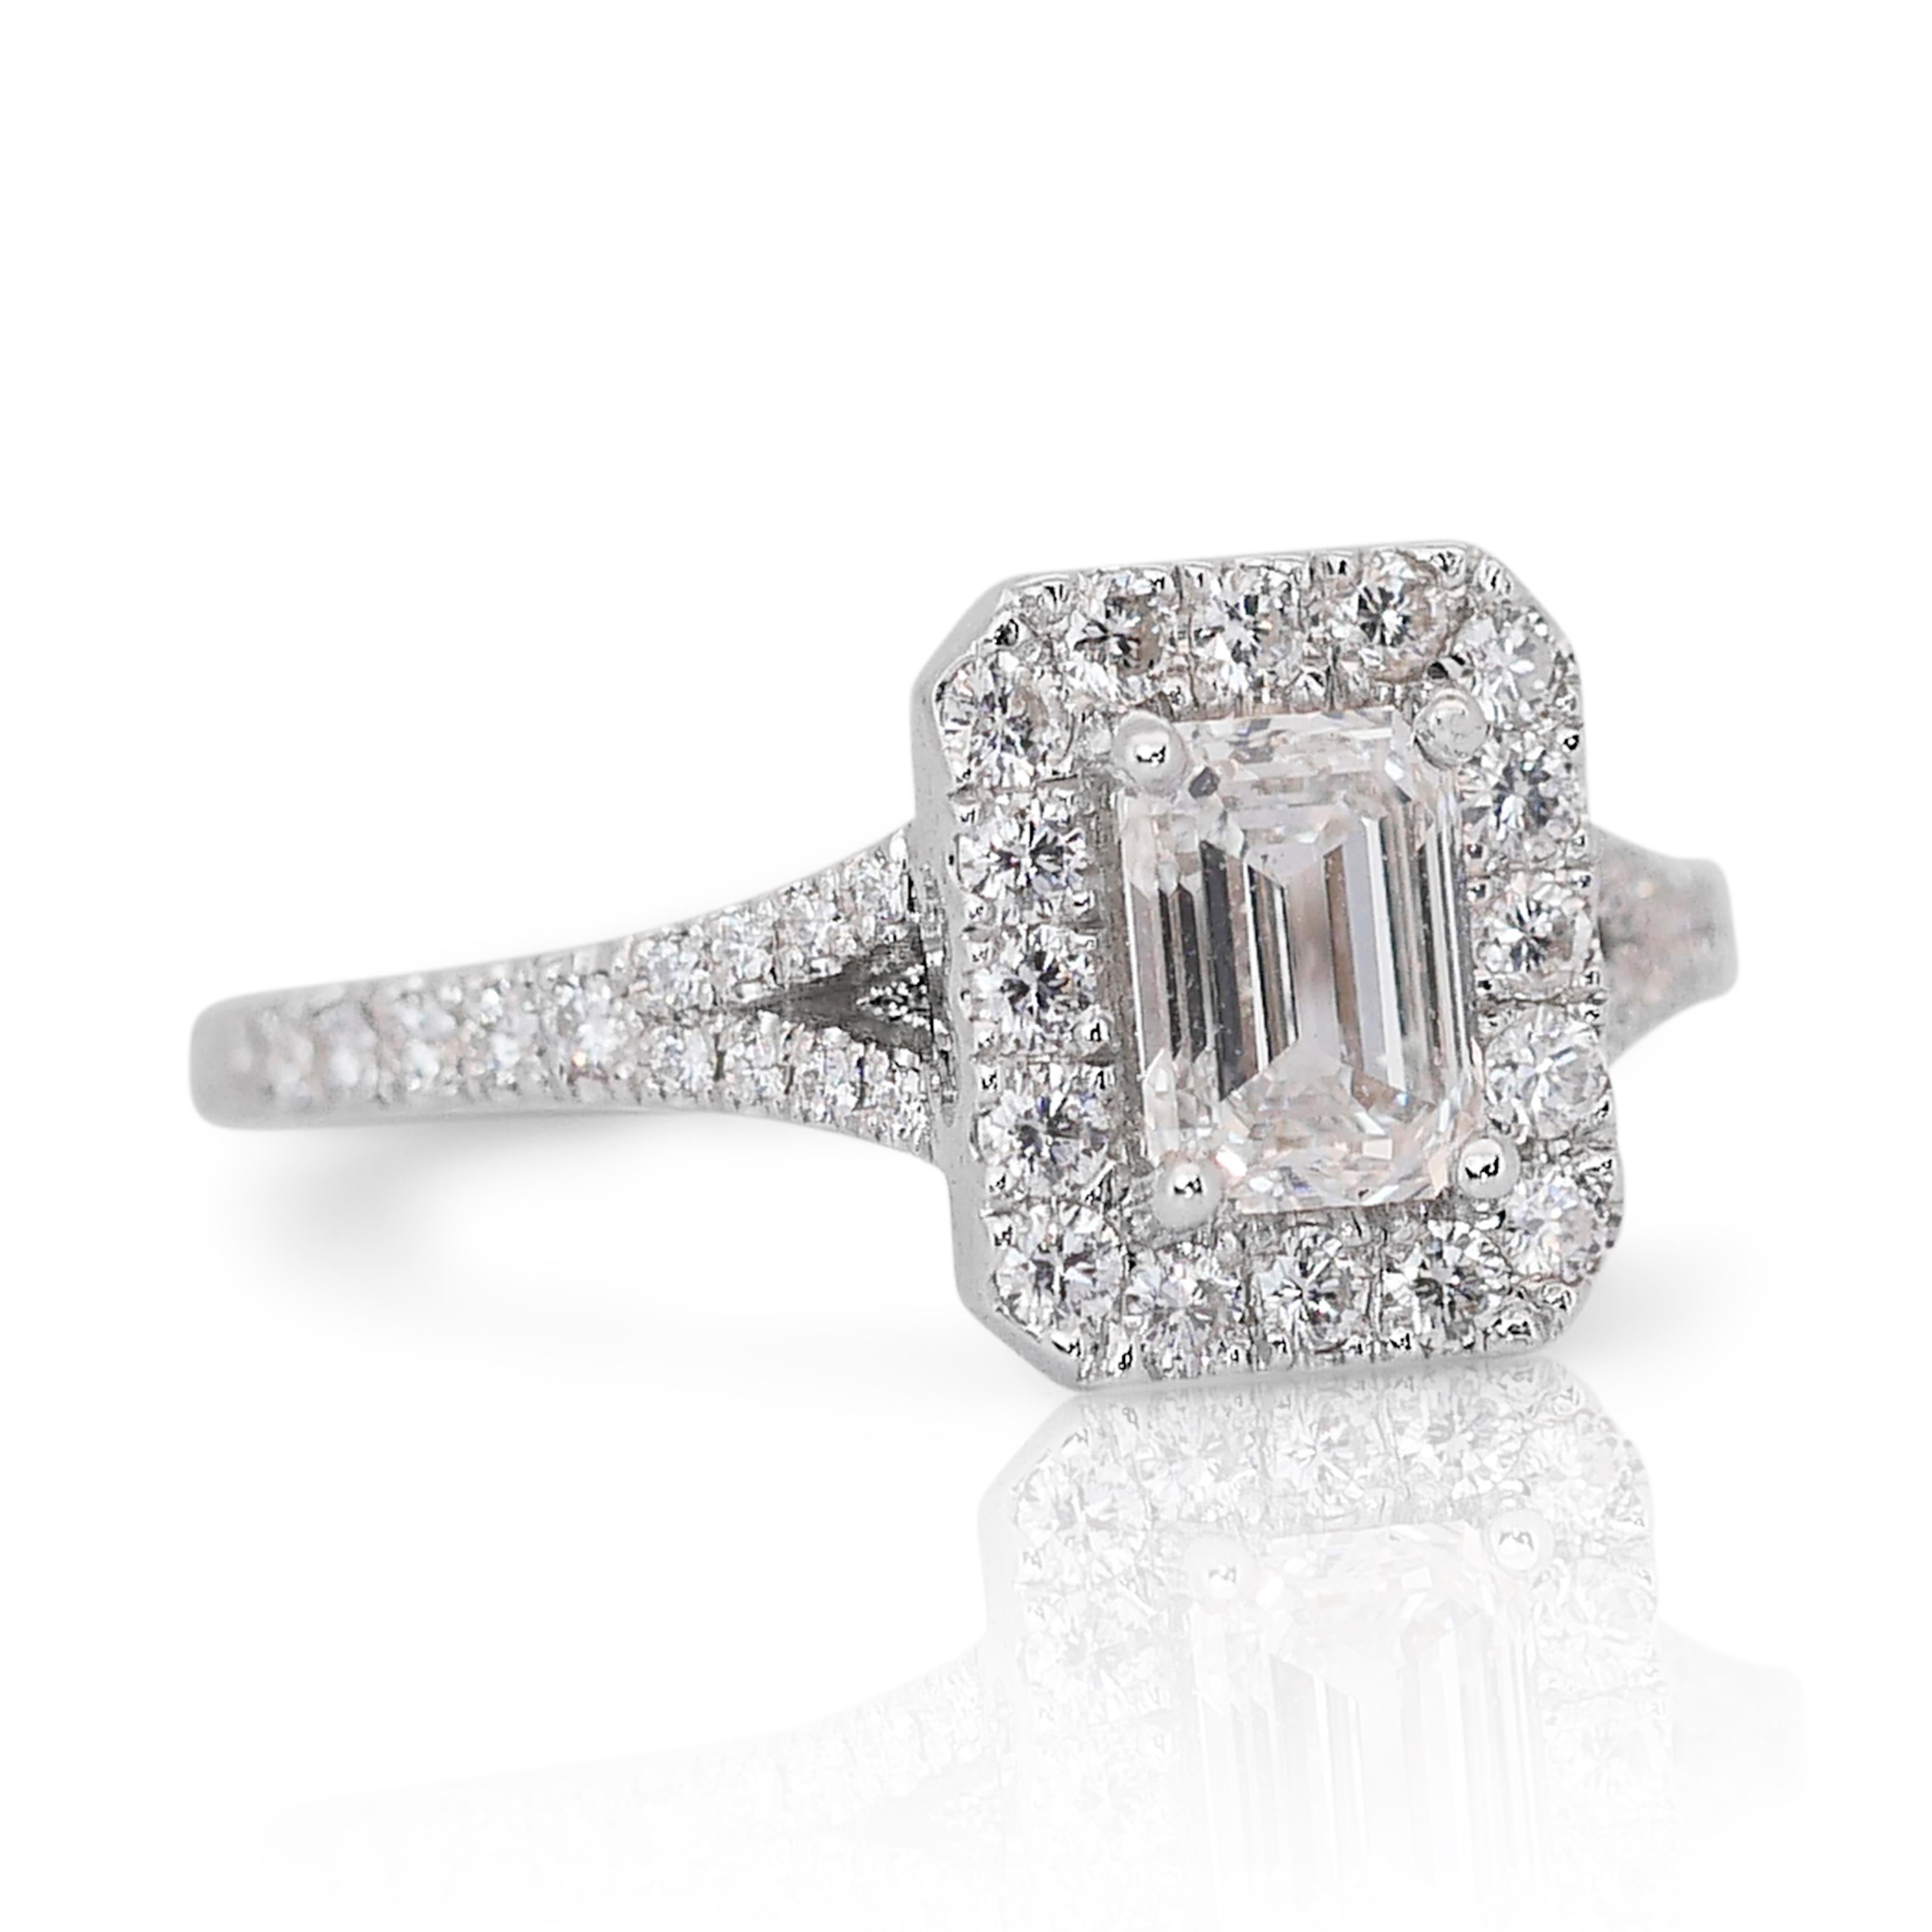 Fesselnder 1,15ct Smaragd-Schliff Diamant Halo Ring in 18k Weißgold - GIA zertifiziert 

Dieser exquisite Diamant-Halo-Ring aus 18 Karat Weißgold ist eine perfekte Mischung aus moderner Eleganz und zeitlosem Design. In der Mitte befindet sich ein